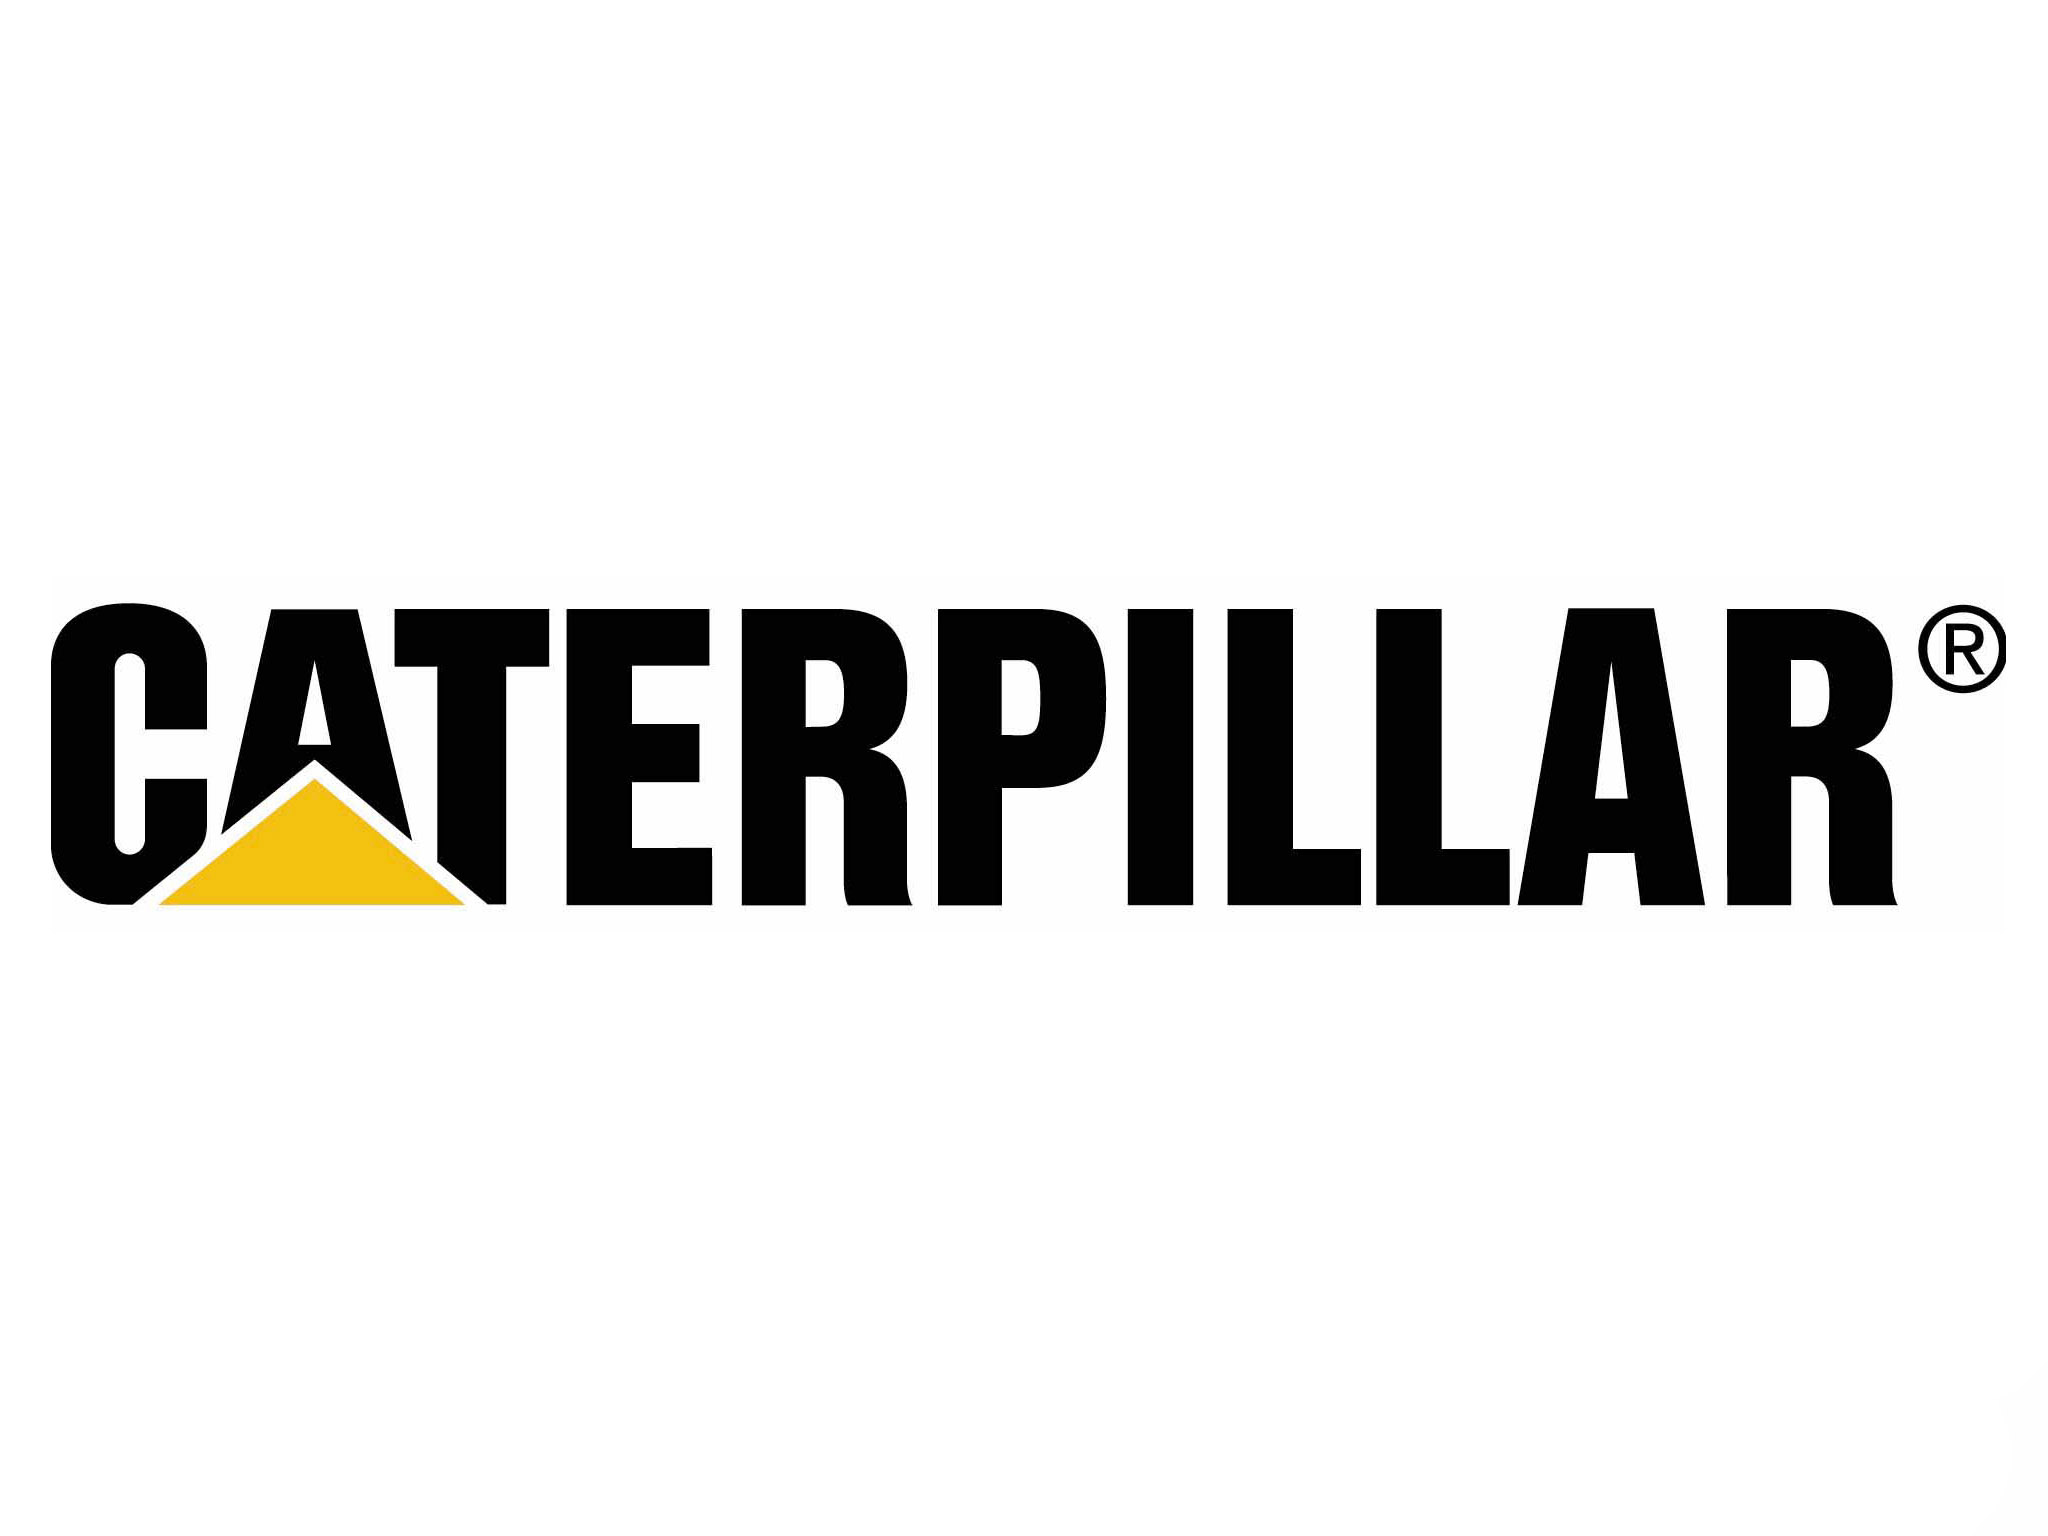 Caterpillar logo  Caterpillar to expand its facilities in Wamego